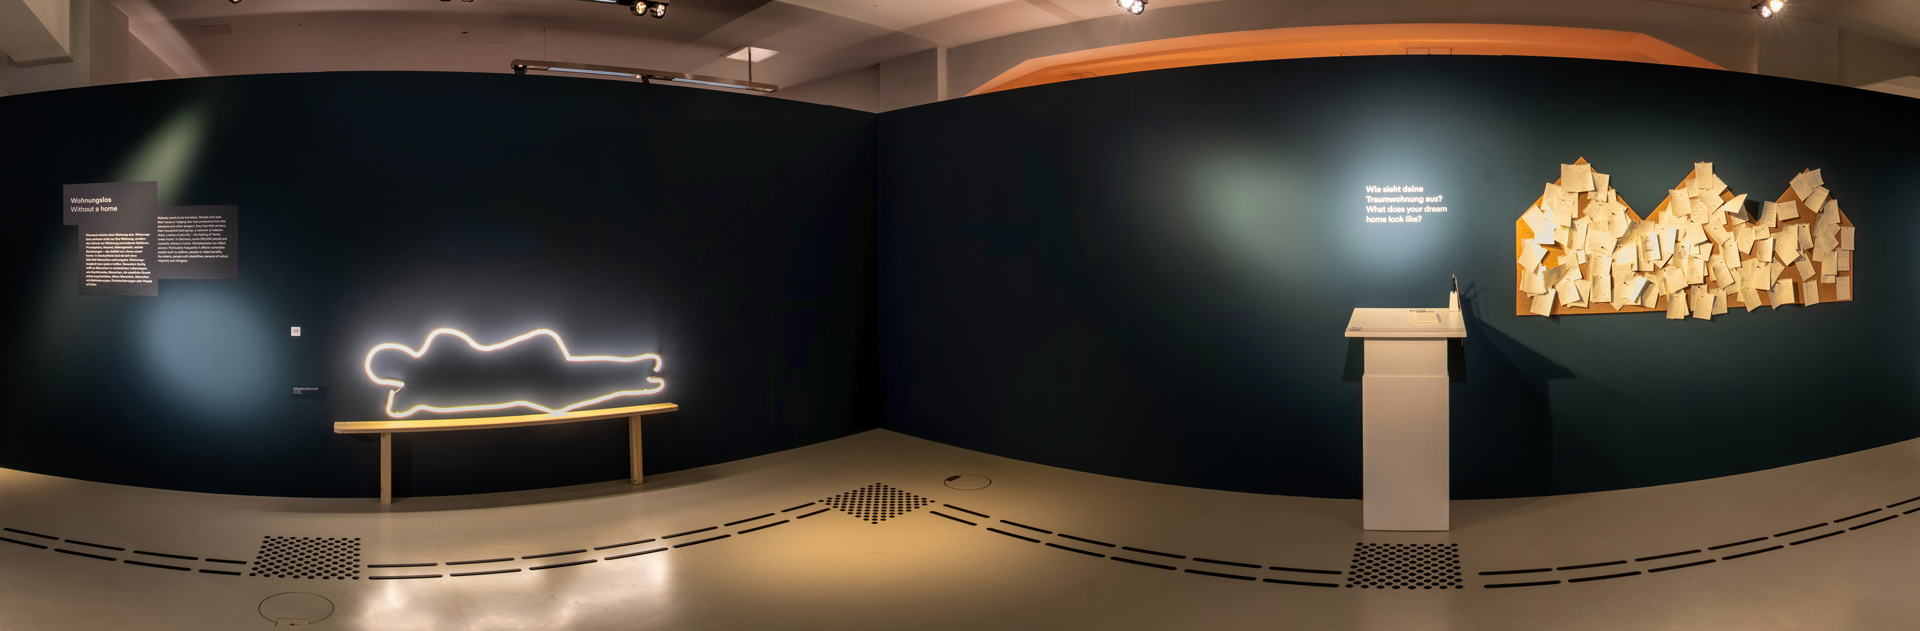 Das Bild zeigt eine dunkle Wand mit einem Bodenleitsystem davor. Auf der linken Seite ist eine Leuchtskultpur an der Wand befestigt. Sie zeigt die Umrisse einer schlafenden Person auf einer Holzbank. Rechts sind drei Pinnwände in Haus-Form mit vielen Notizzetteln daran.